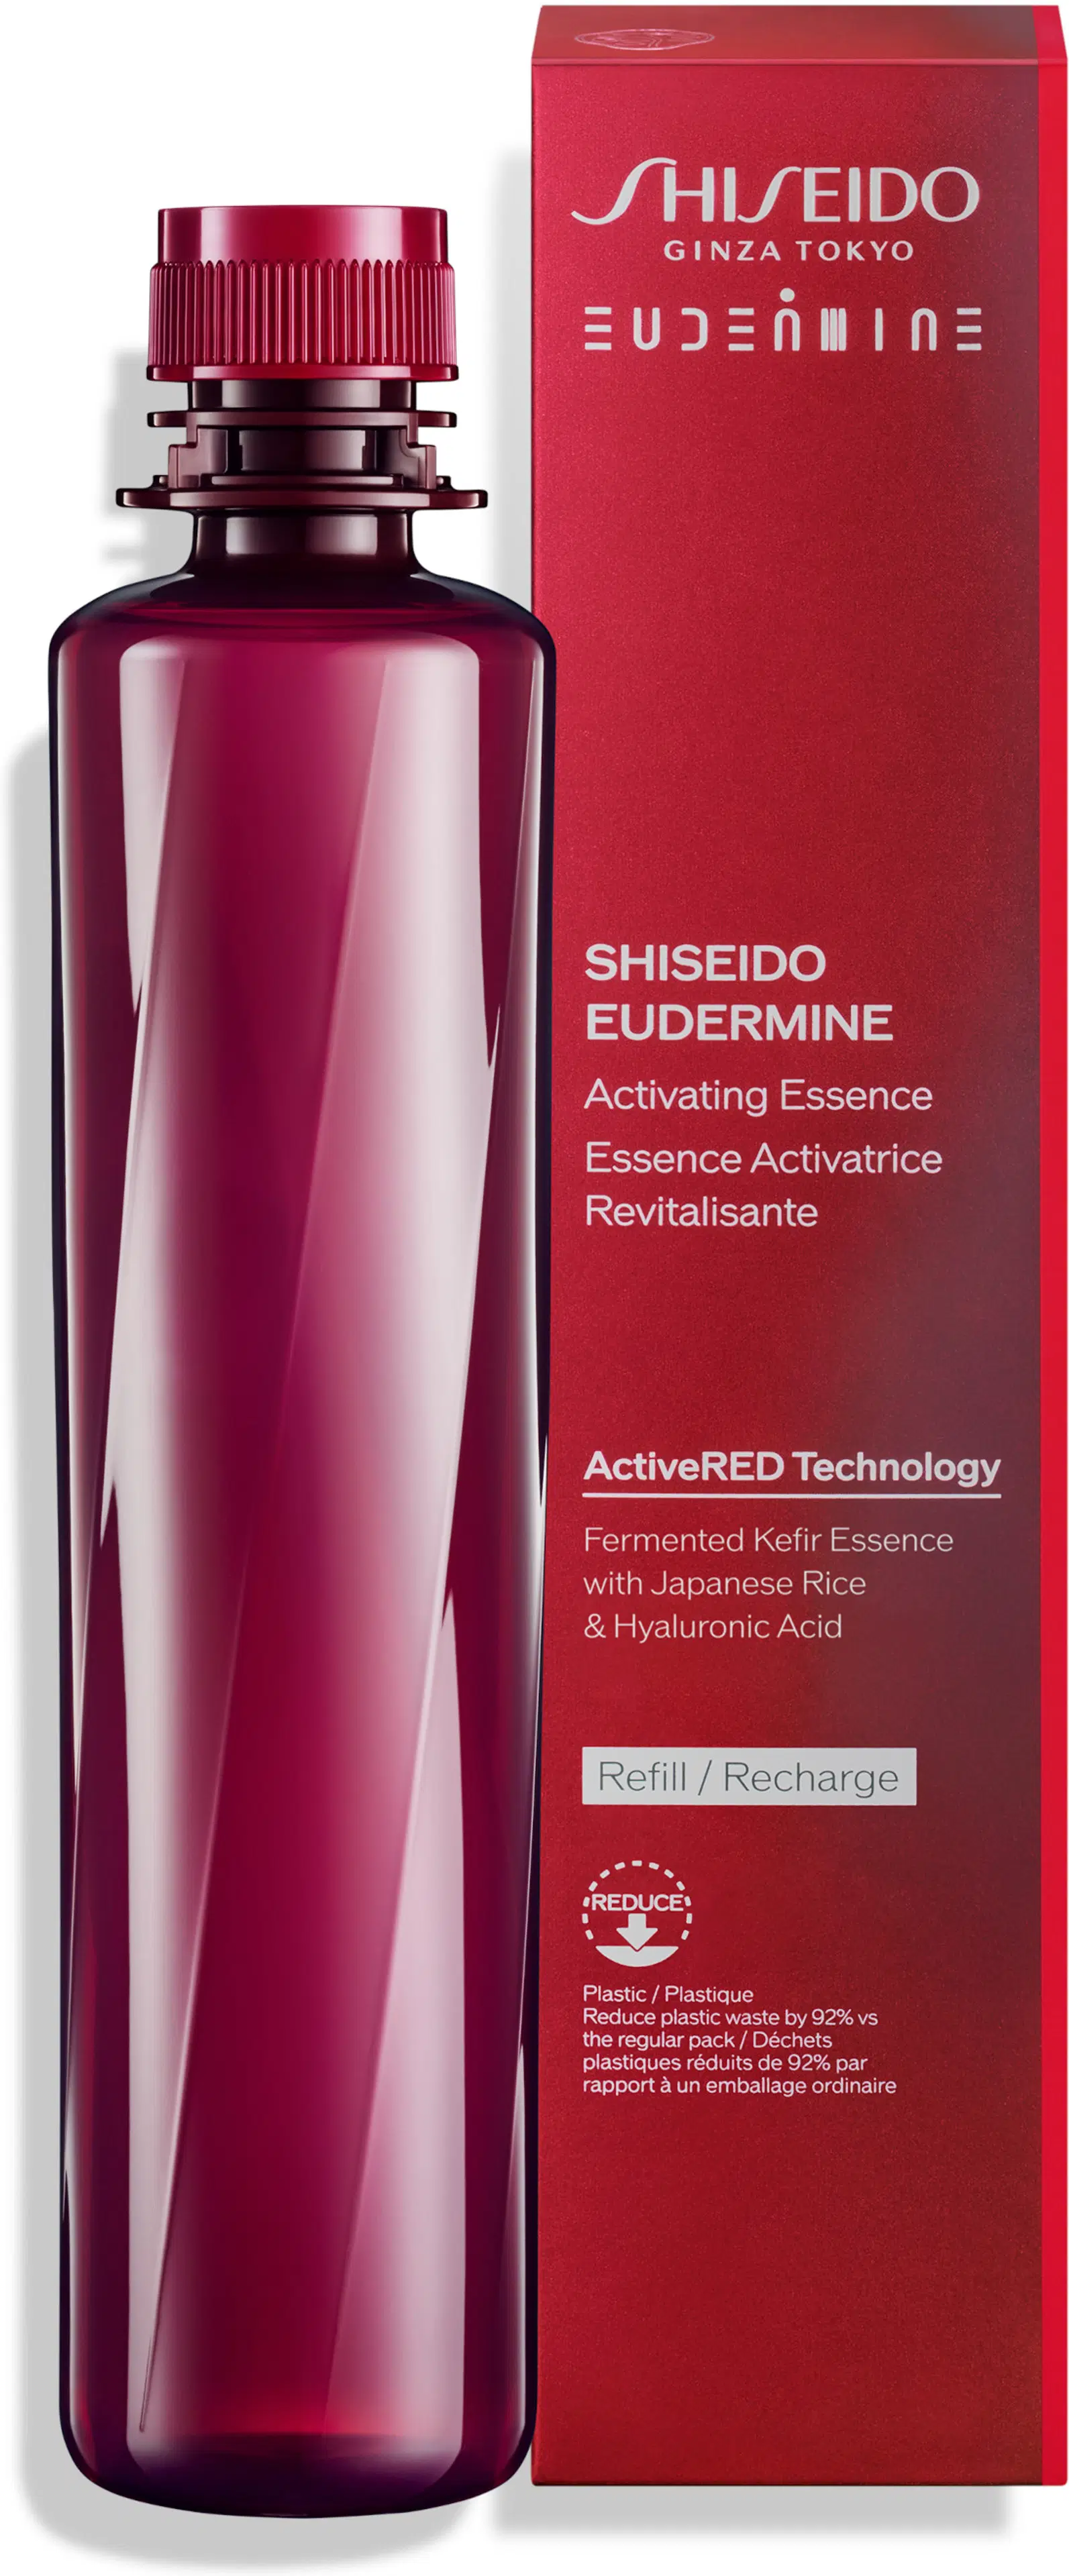 Shiseido Eudermine Activating Essence Refill hoitovesi täyttöpakkaus 150 ml